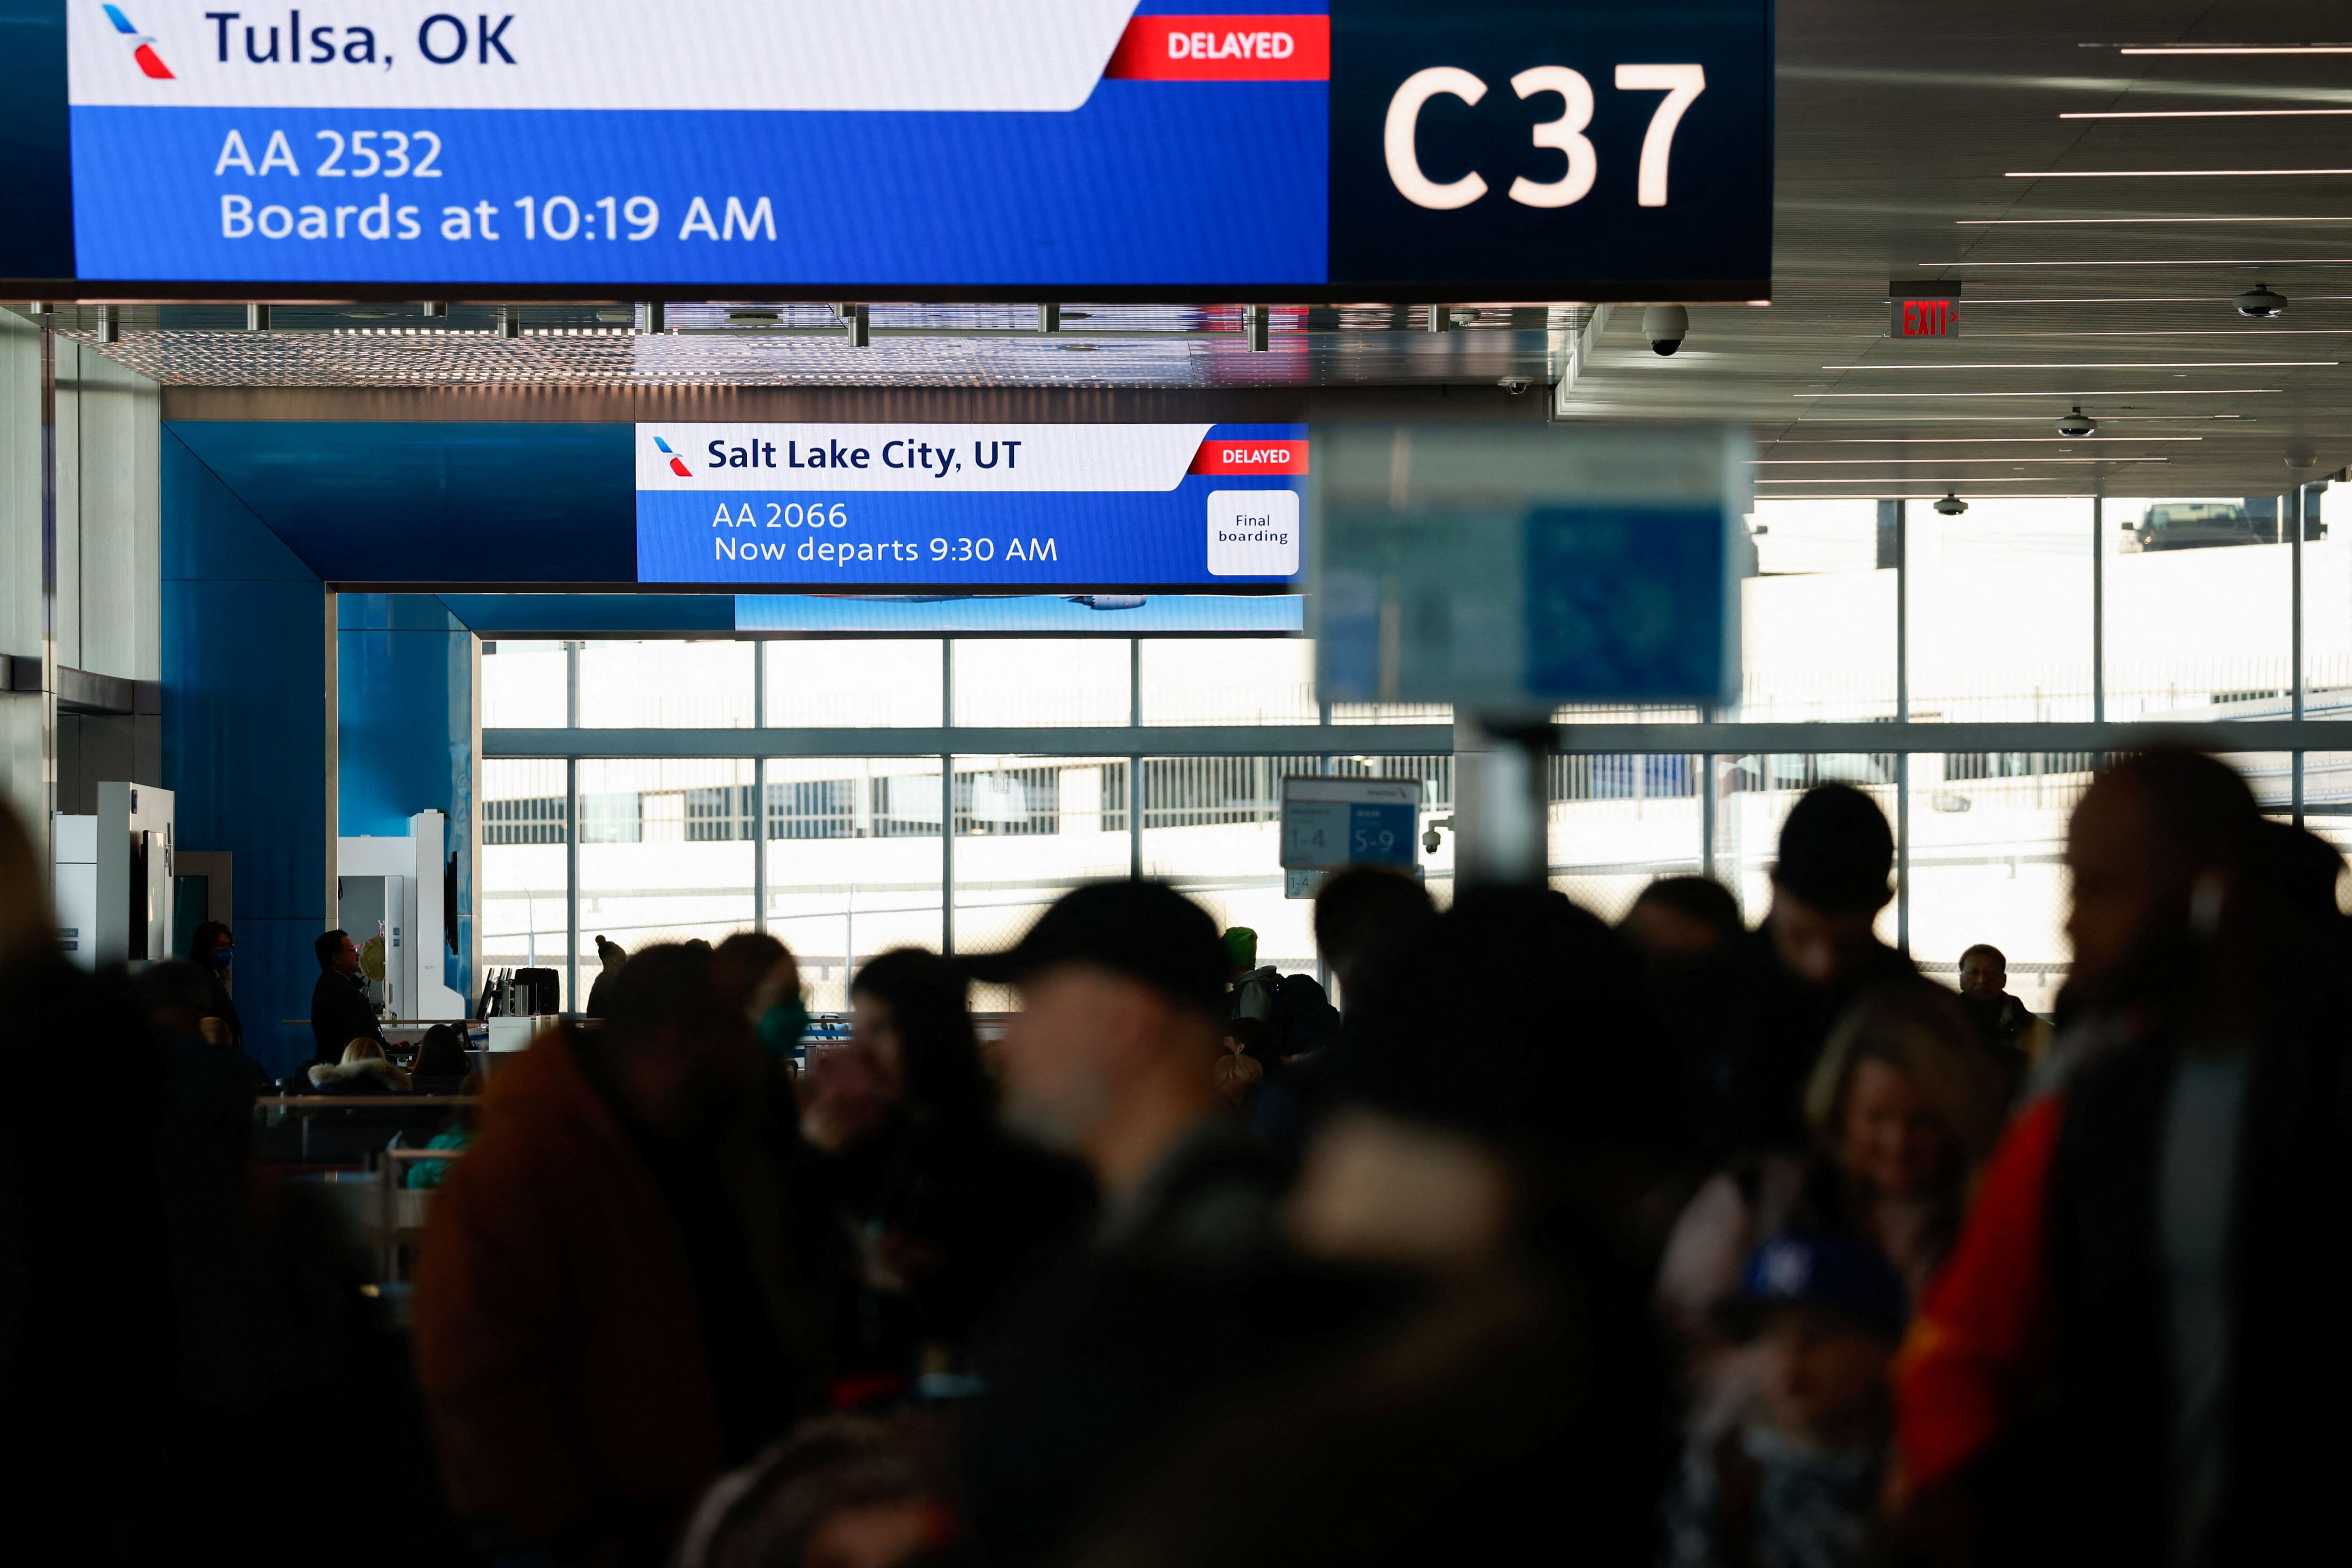 El aeropuerto de Dallas/Fort Worth fue elogiado por su eficiencia, pero cuestionado por su baja oferta de en comida y mala señalización. (REUTERS/Marco Bello)